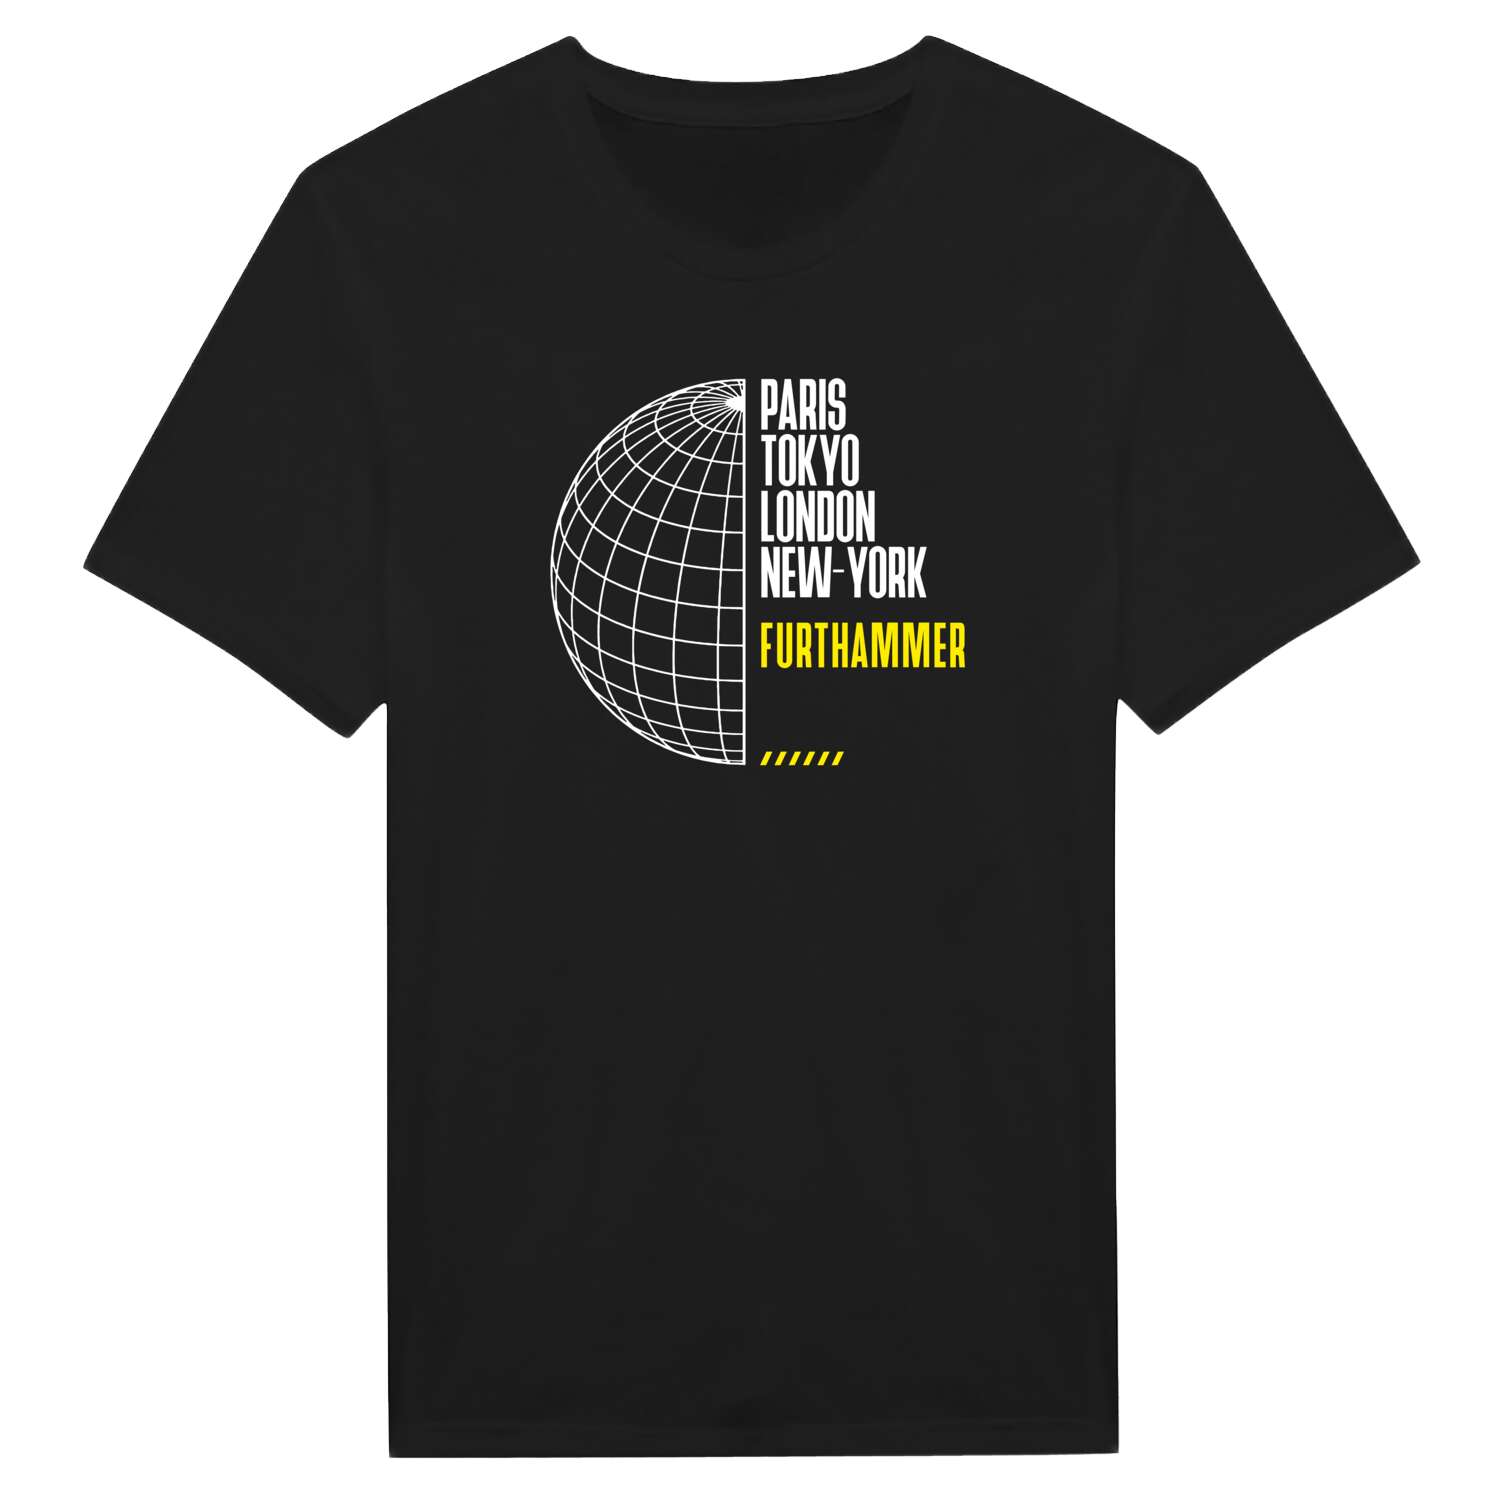 Furthammer T-Shirt »Paris Tokyo London«